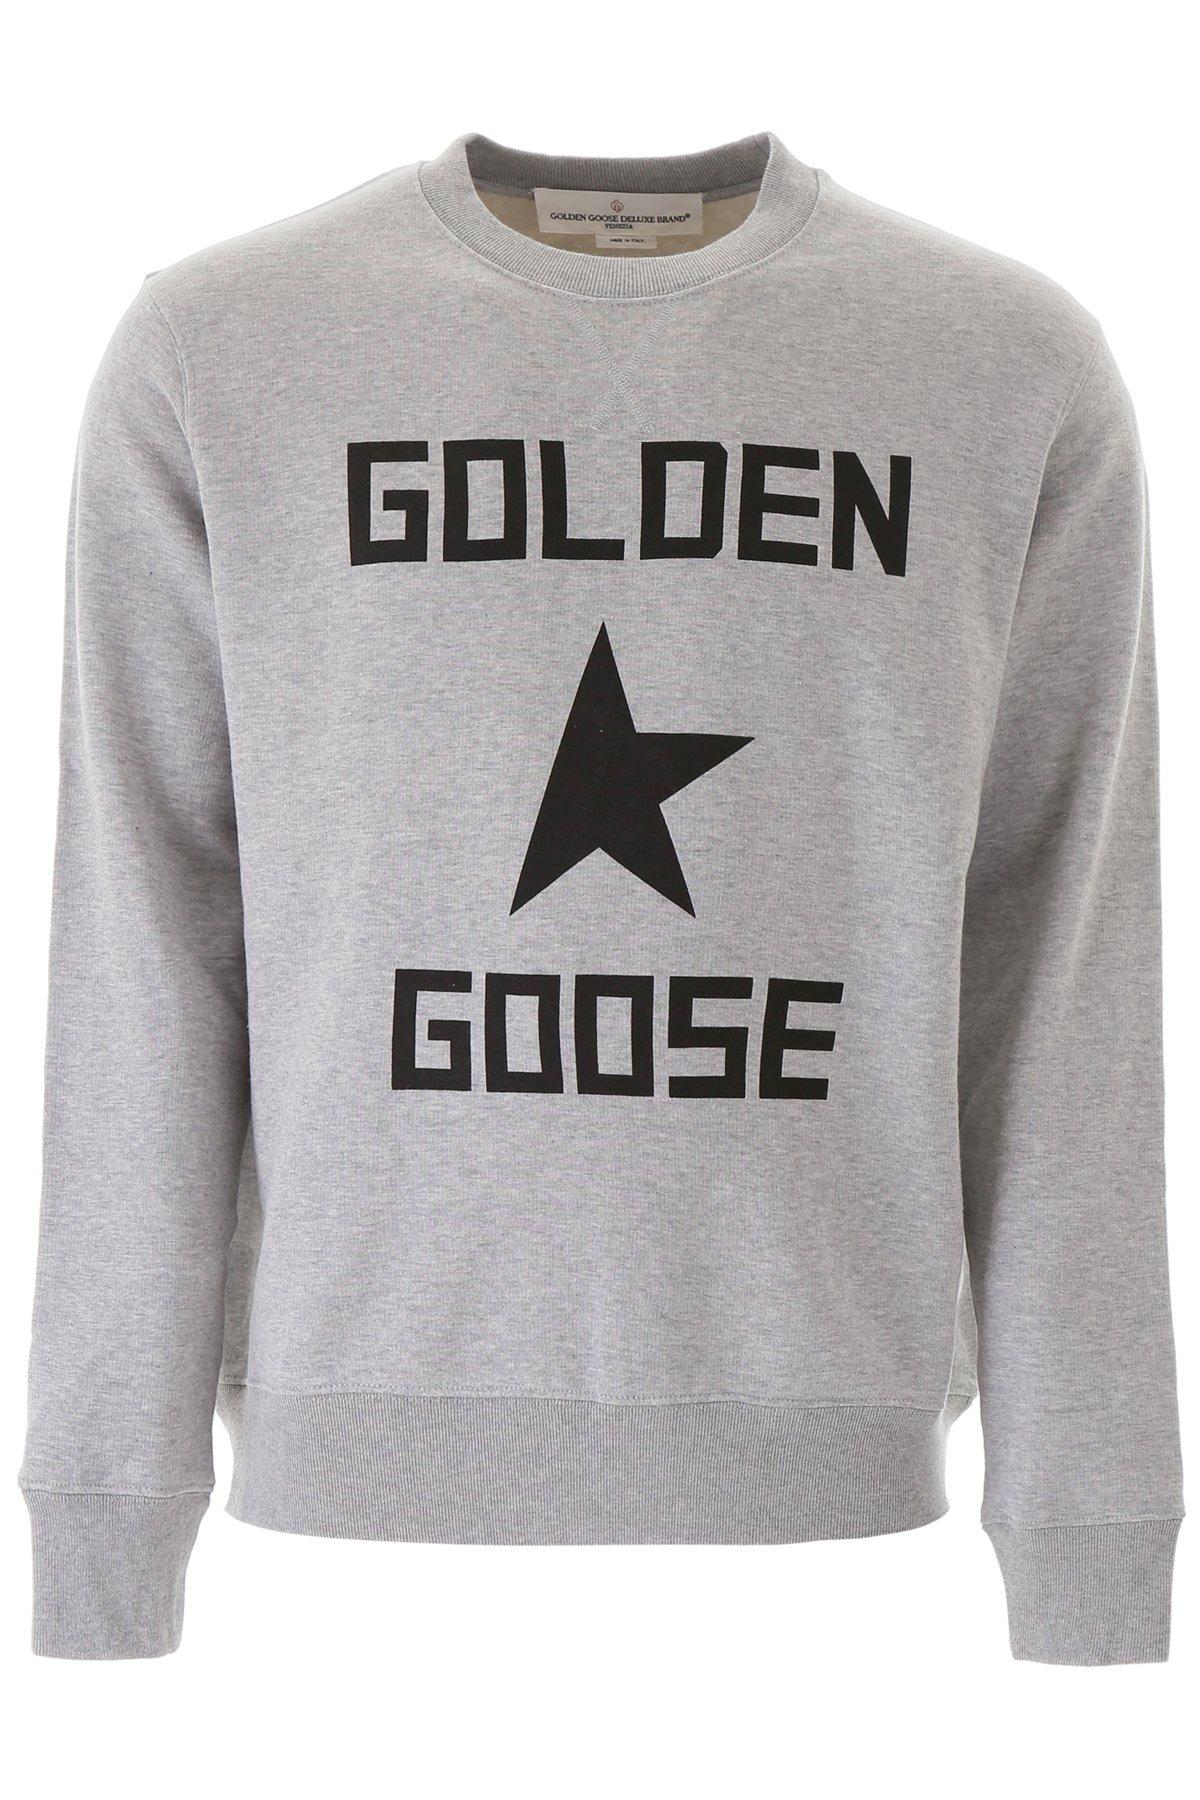 Golden Goose Goose Grey Cotton Sweatshirt in Gray for Men | Lyst